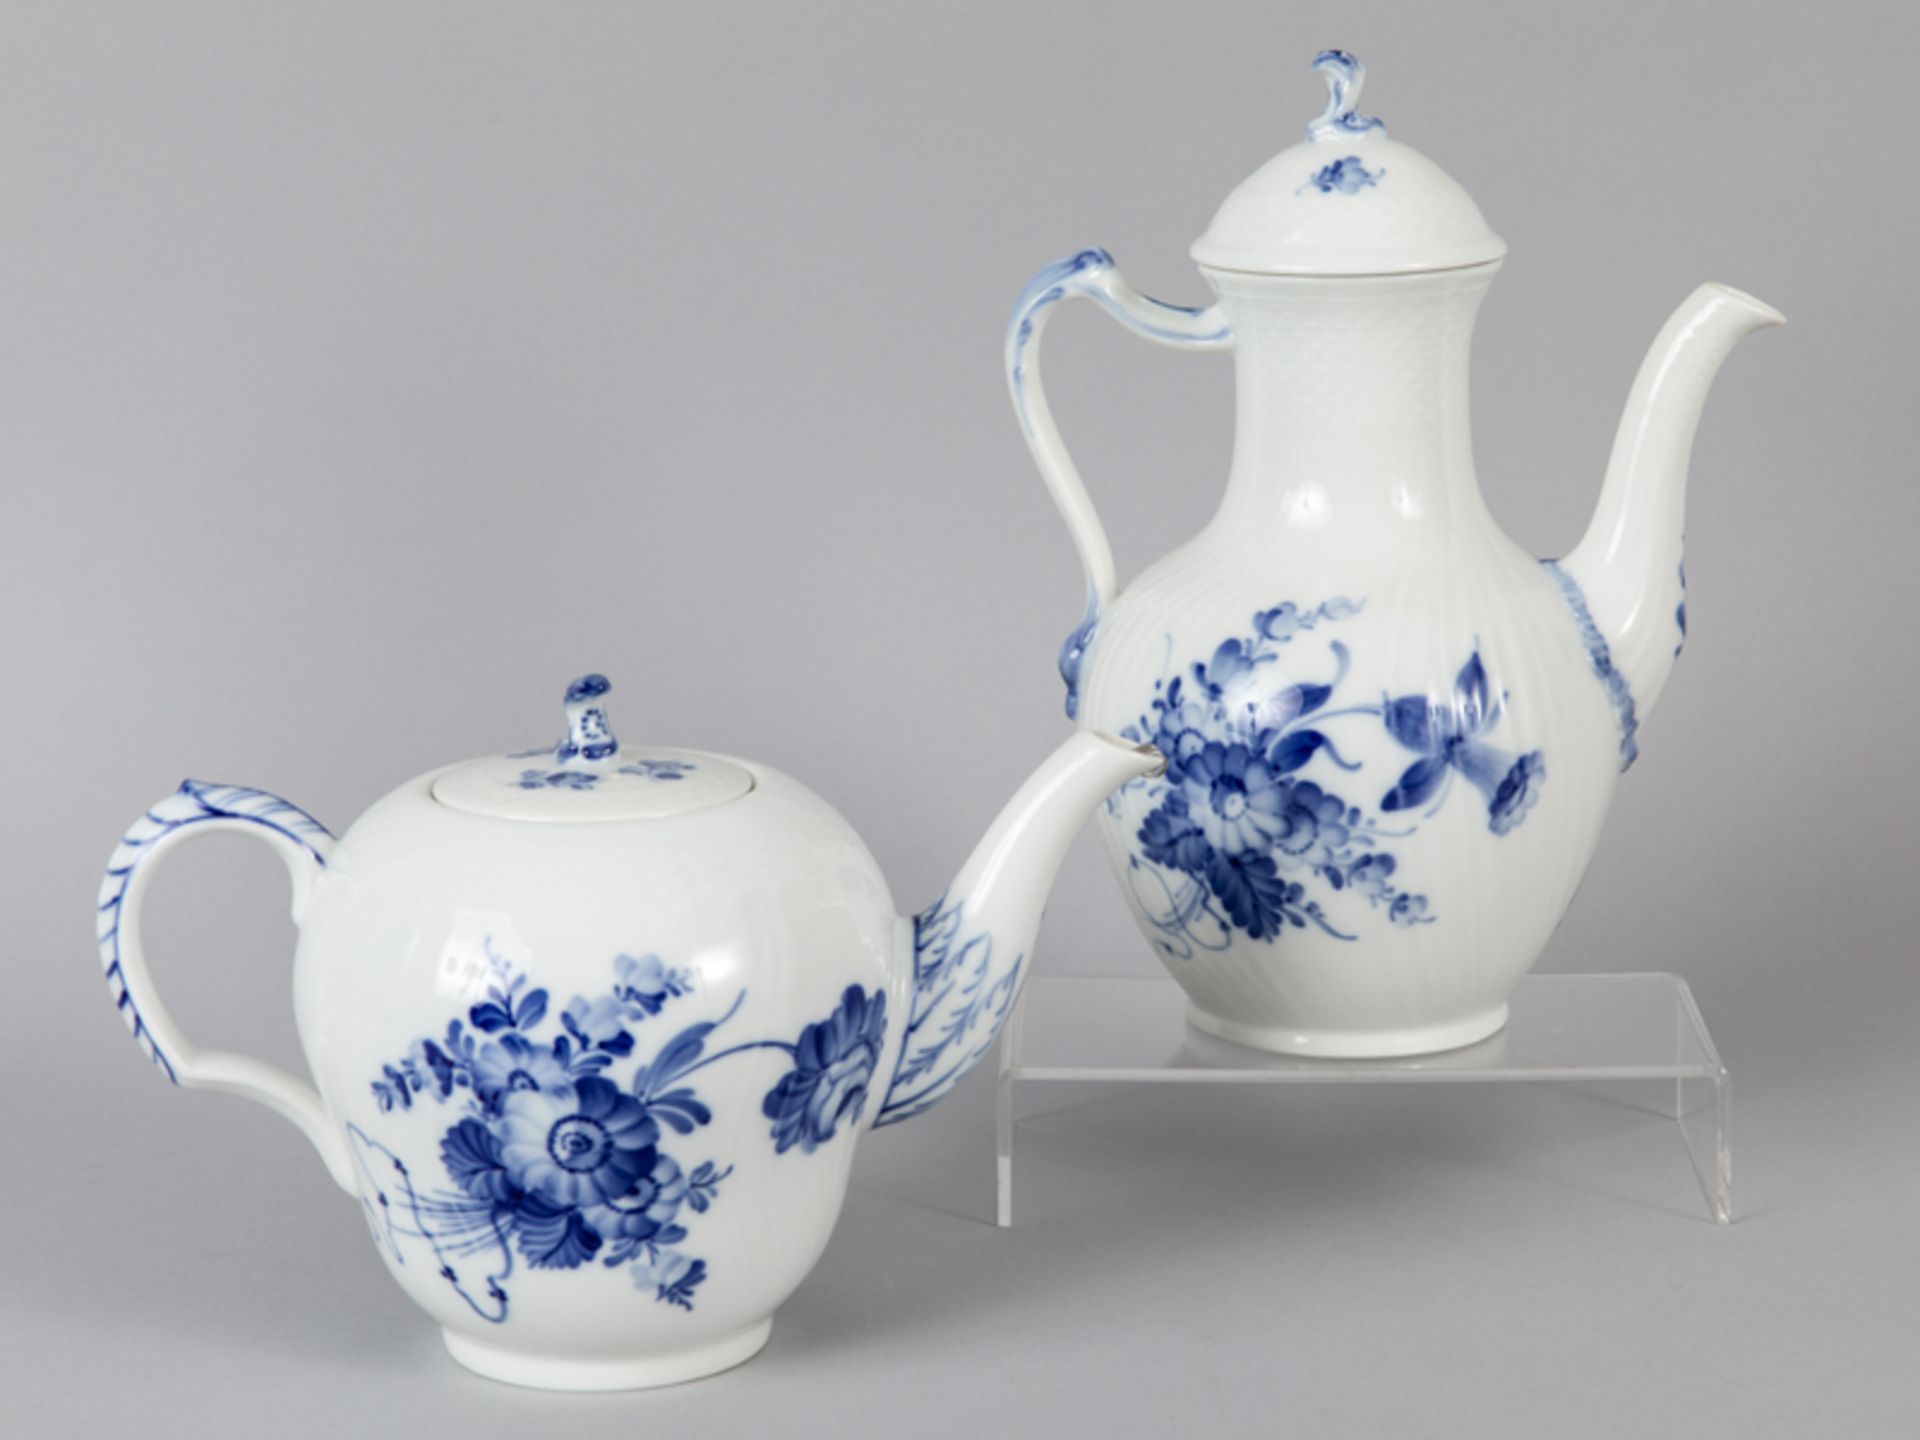 GroÃŸe Teekanne und Kaffeekanne, "Blaue Blume", Royal Copenhagen, 20. Jh. brWeiÃŸporzellan mit unter - Image 2 of 4